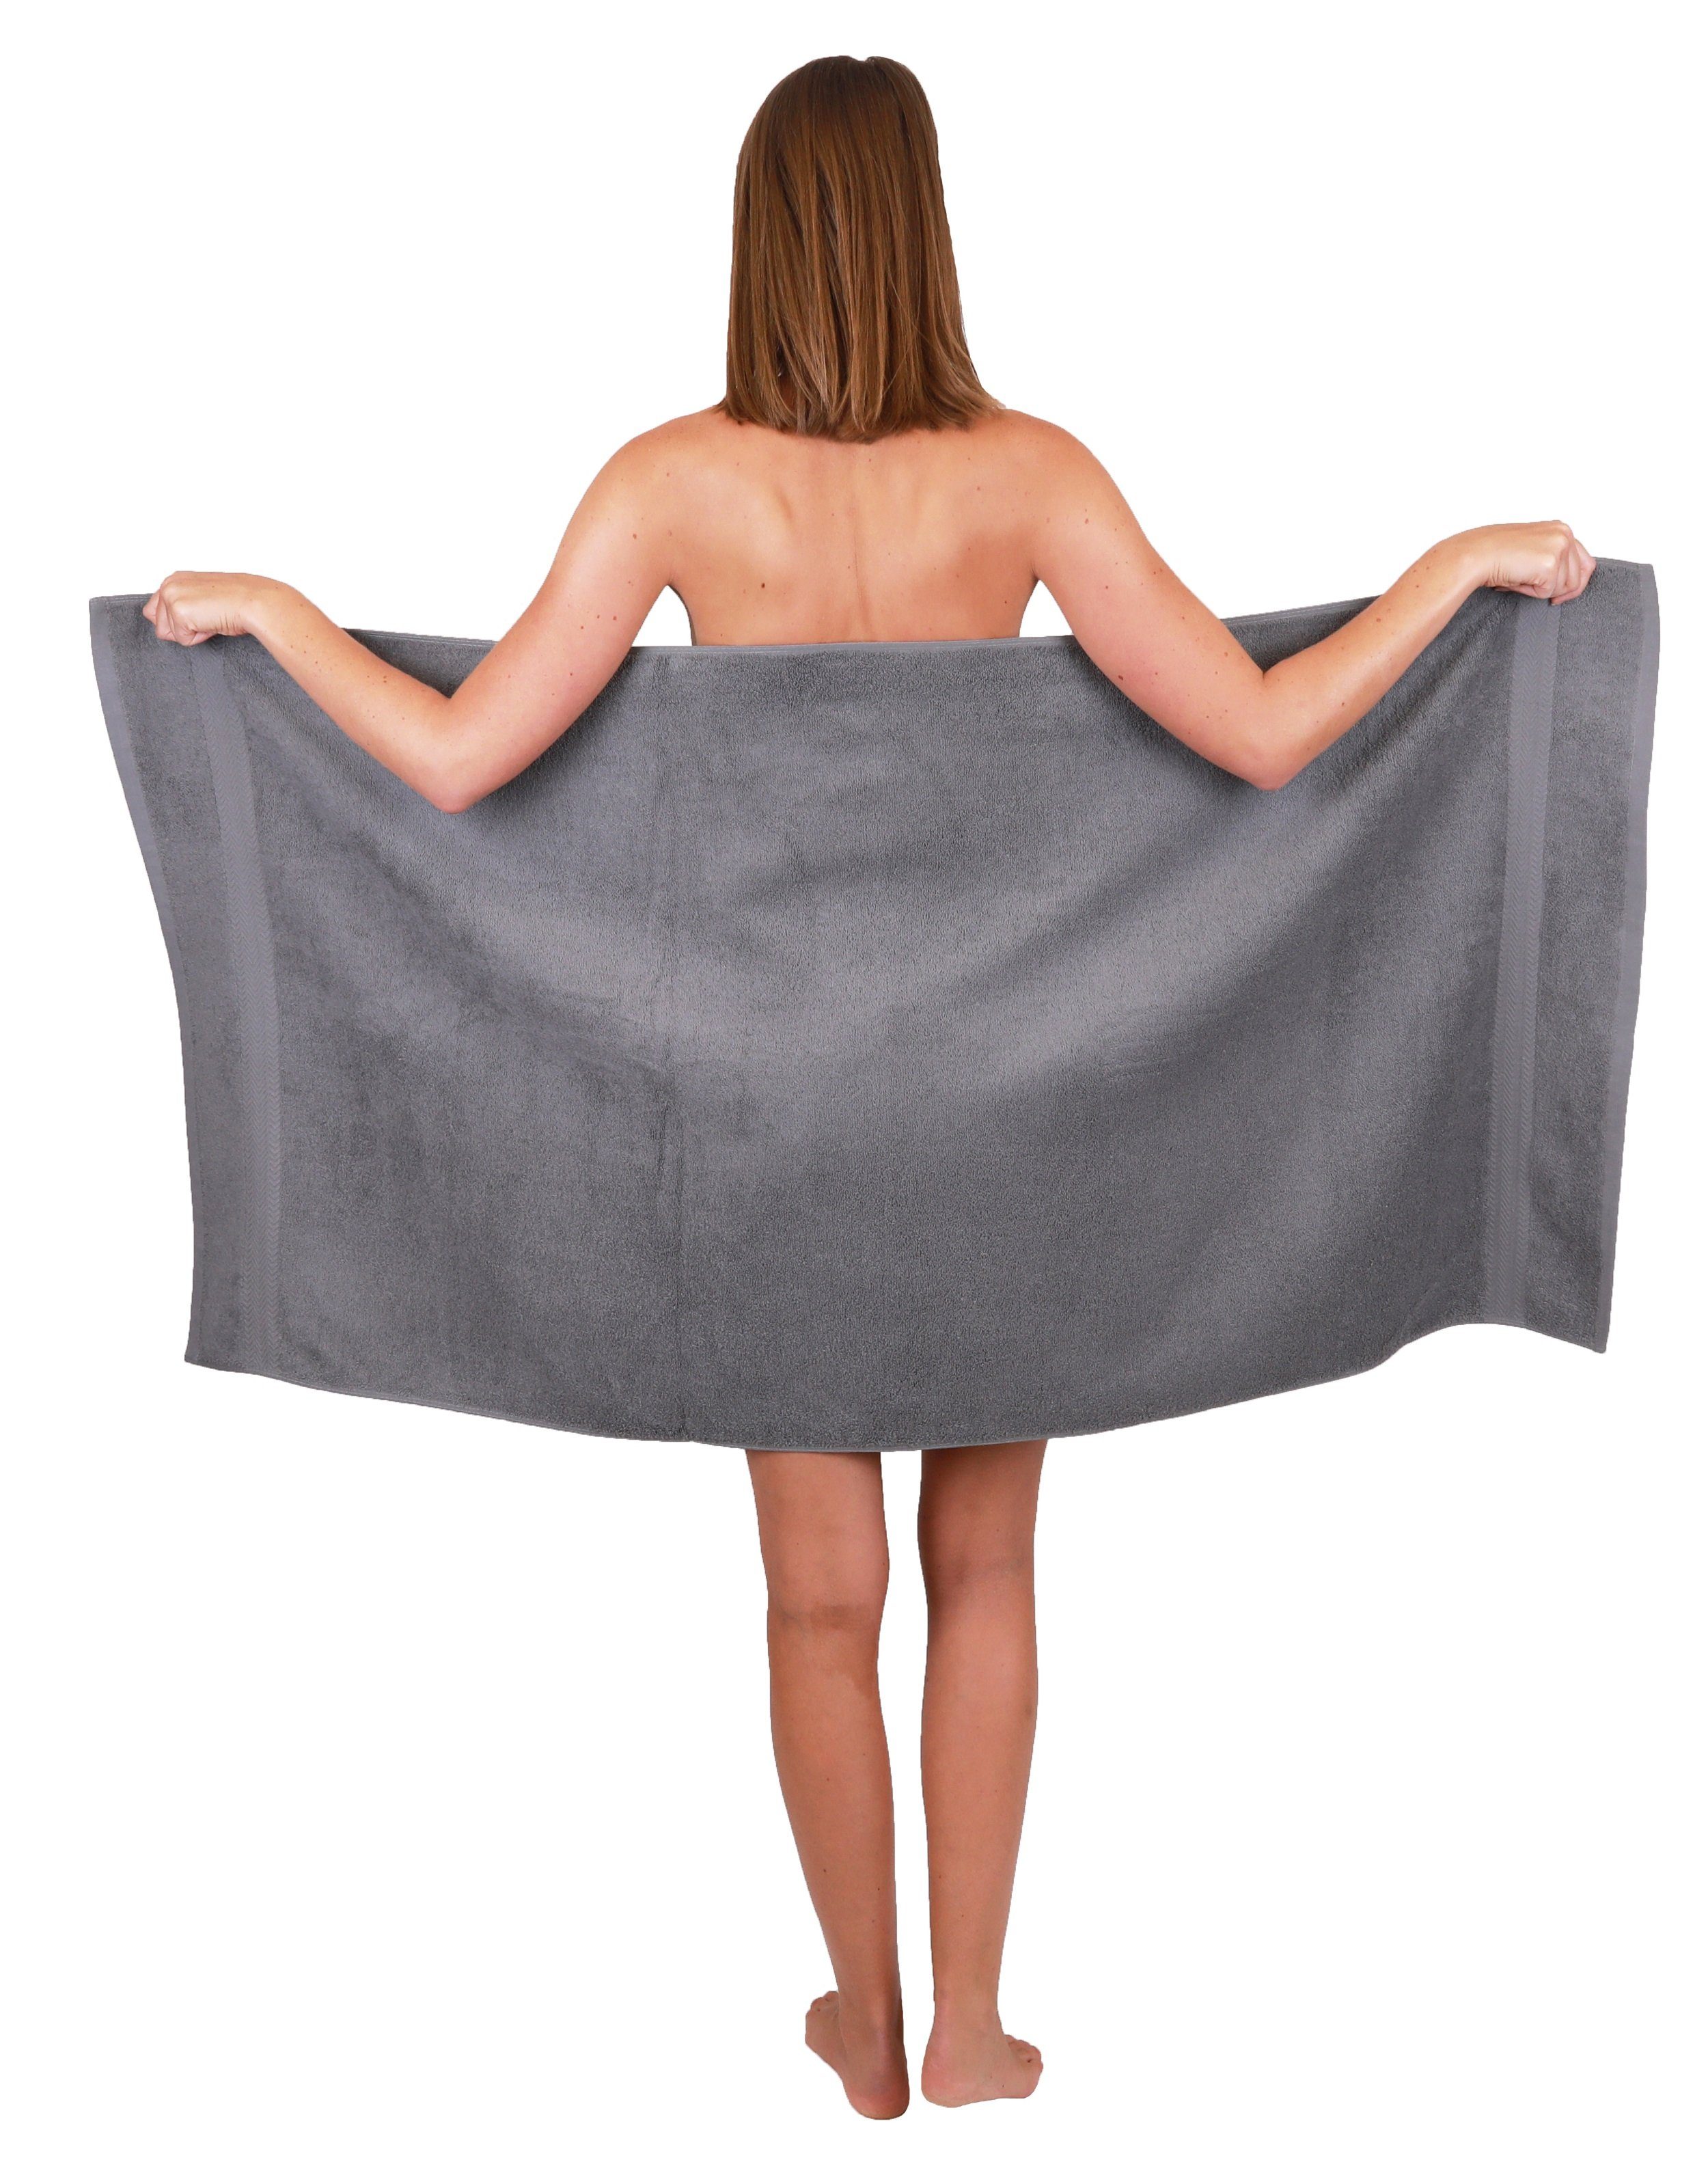 Baumwolle 100% Farbe Baumwolle Handtuch-Set Premium 100% Handtücher anthrazit Duschtücher 2 6-TLG. Set und apfelgrün, Betz 4 Handtuch